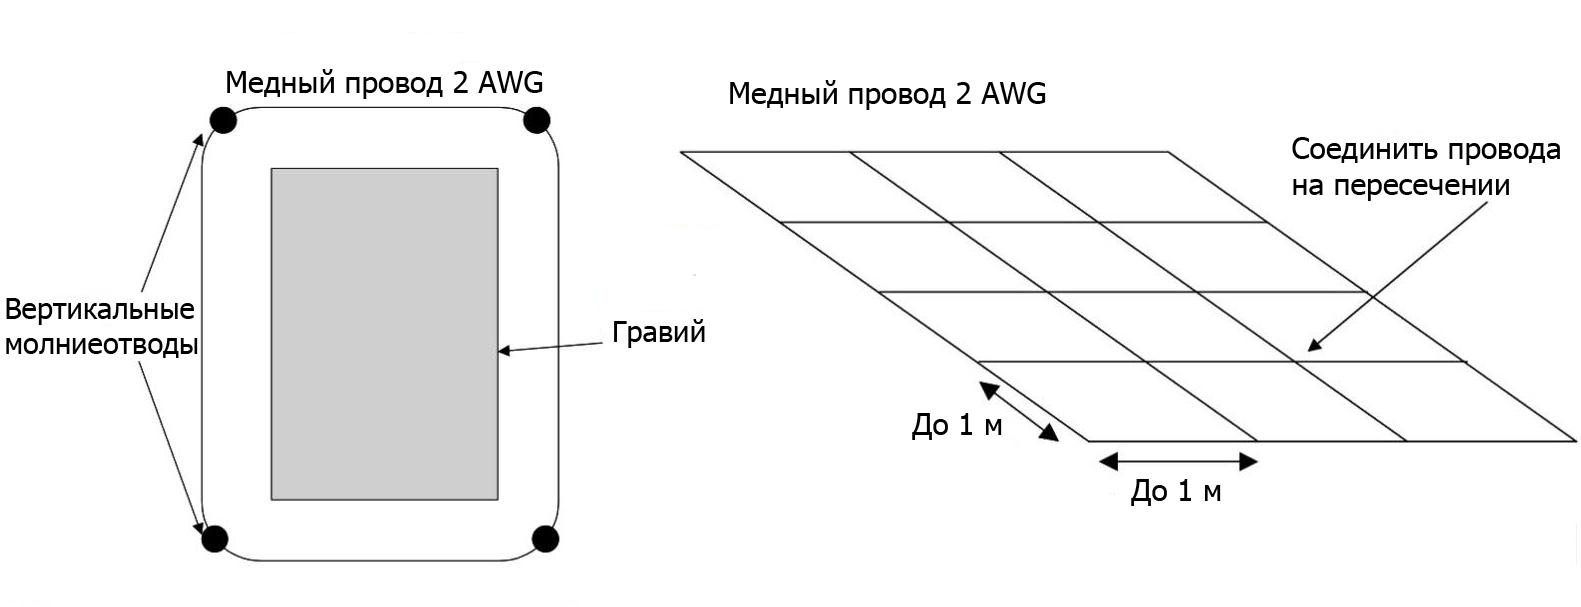 Схемы конструкции и расположения молниезащиты с элементами (сеткой), рассеивающими ток